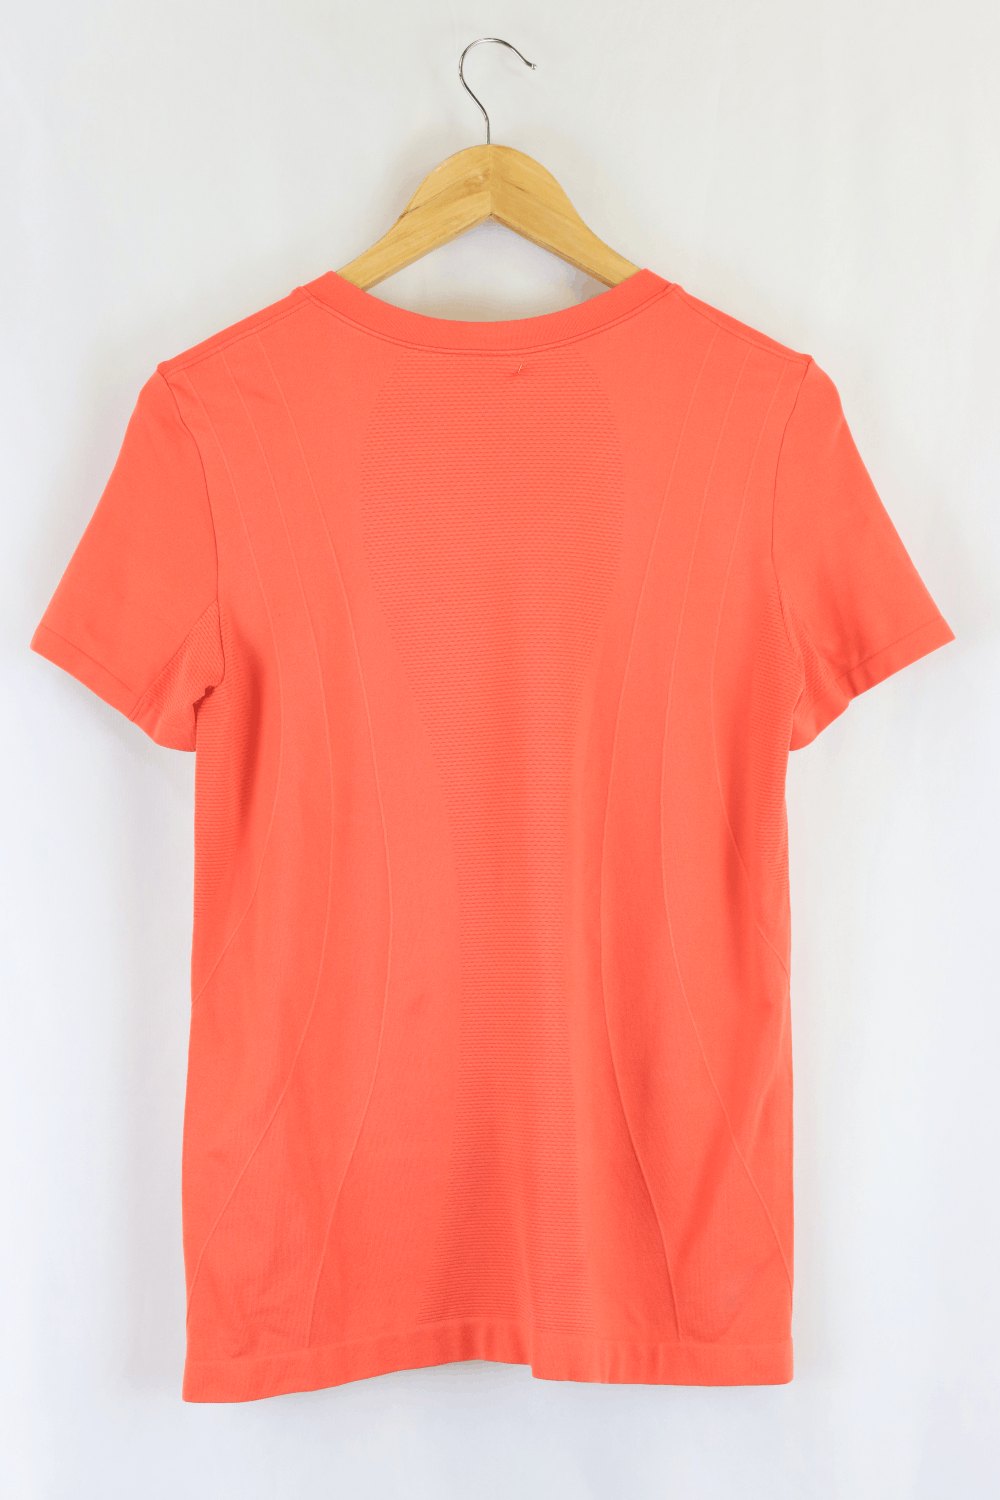 Kookai Orange Top OSFA - Reluv Clothing Australia